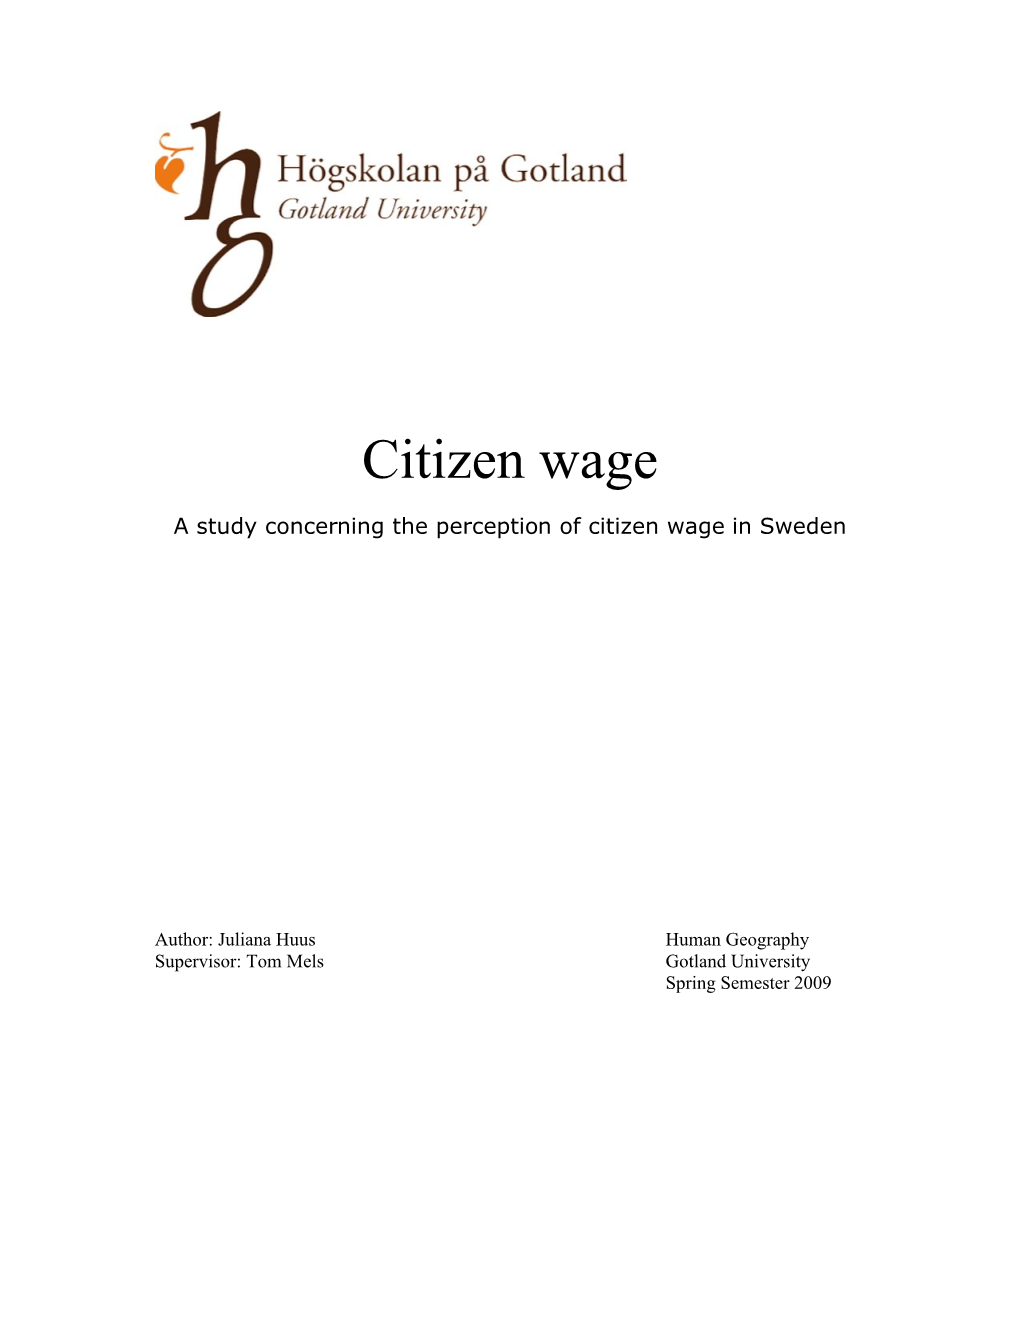 Citizen Wage